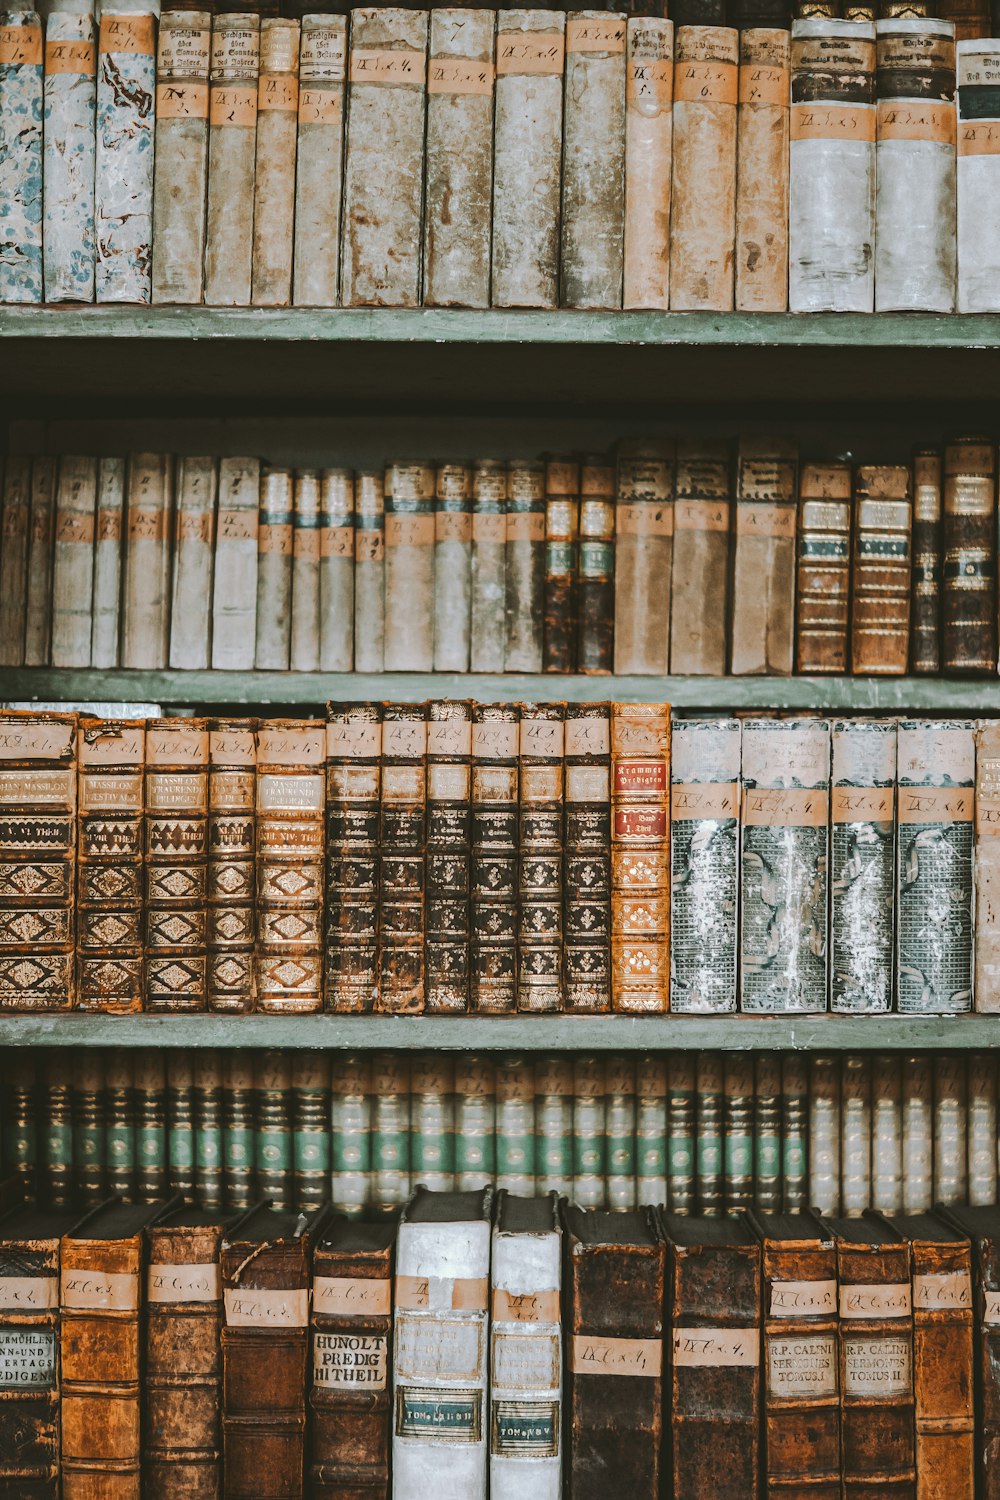 오래된 책들이 가득한 책장